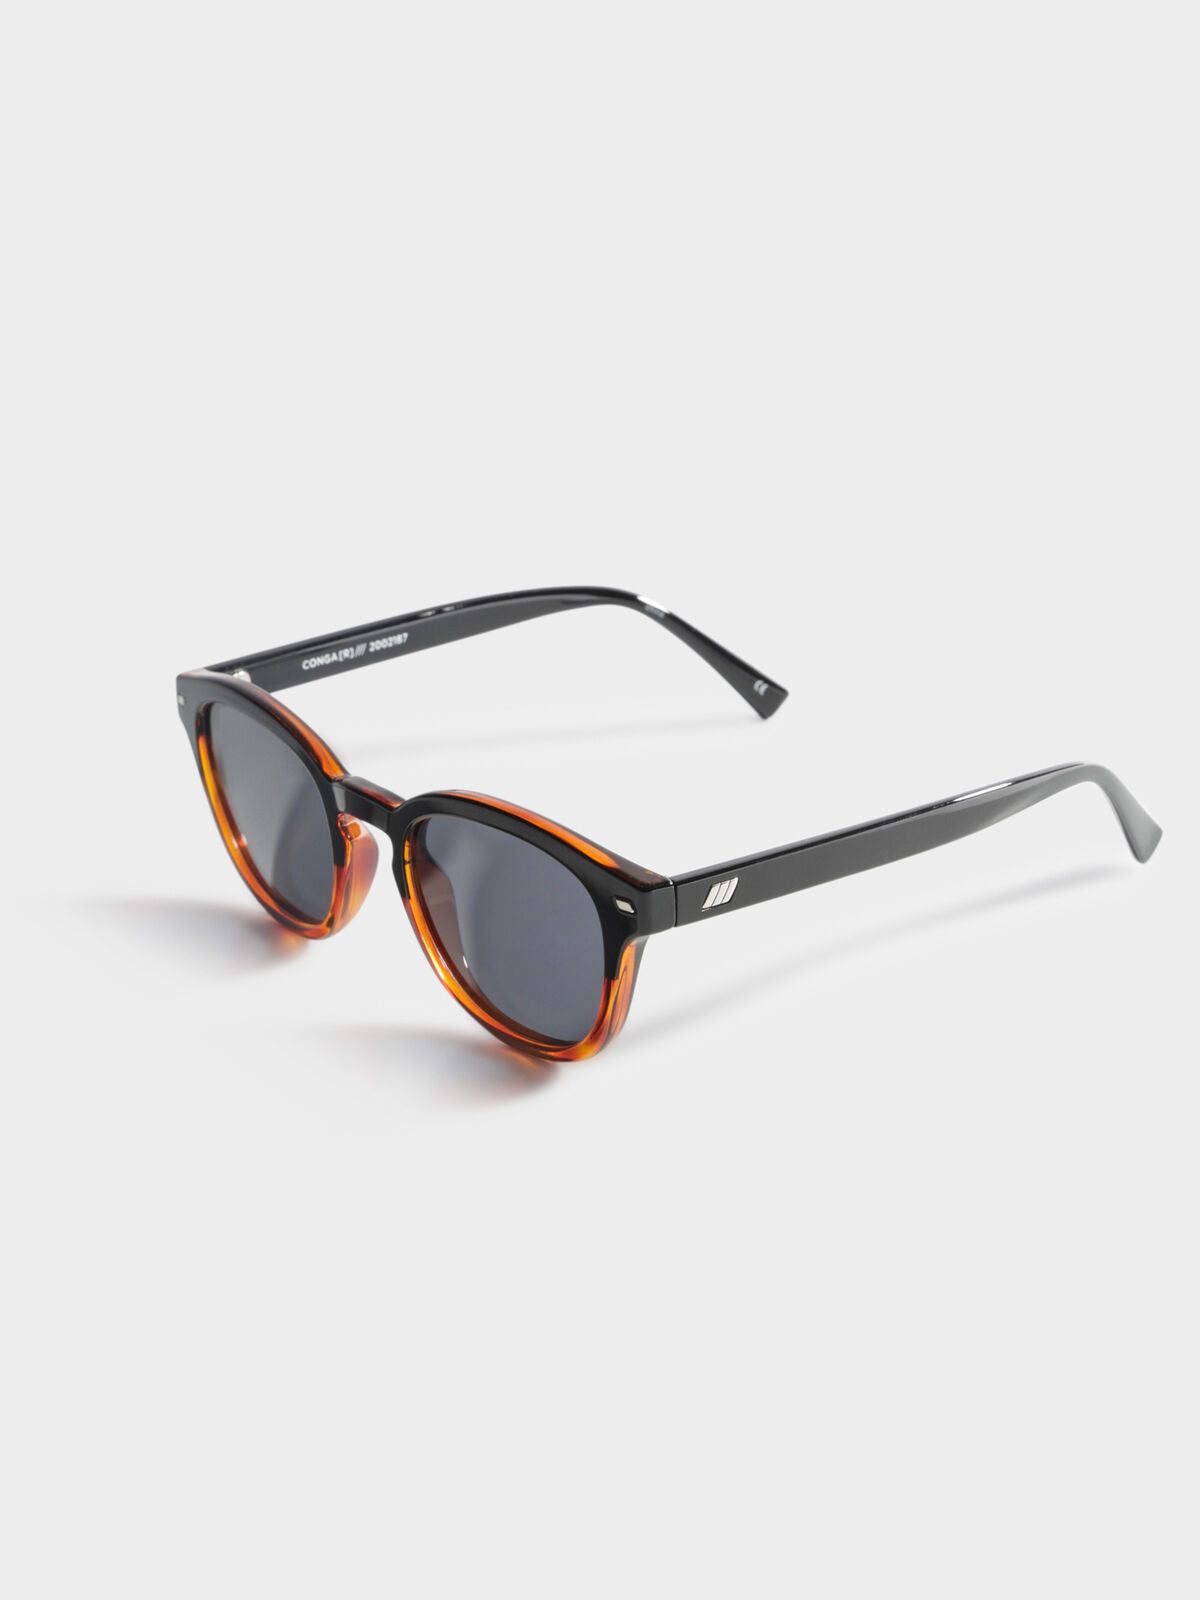 Conga Sunglasses in Black &amp; Tortoiseshell